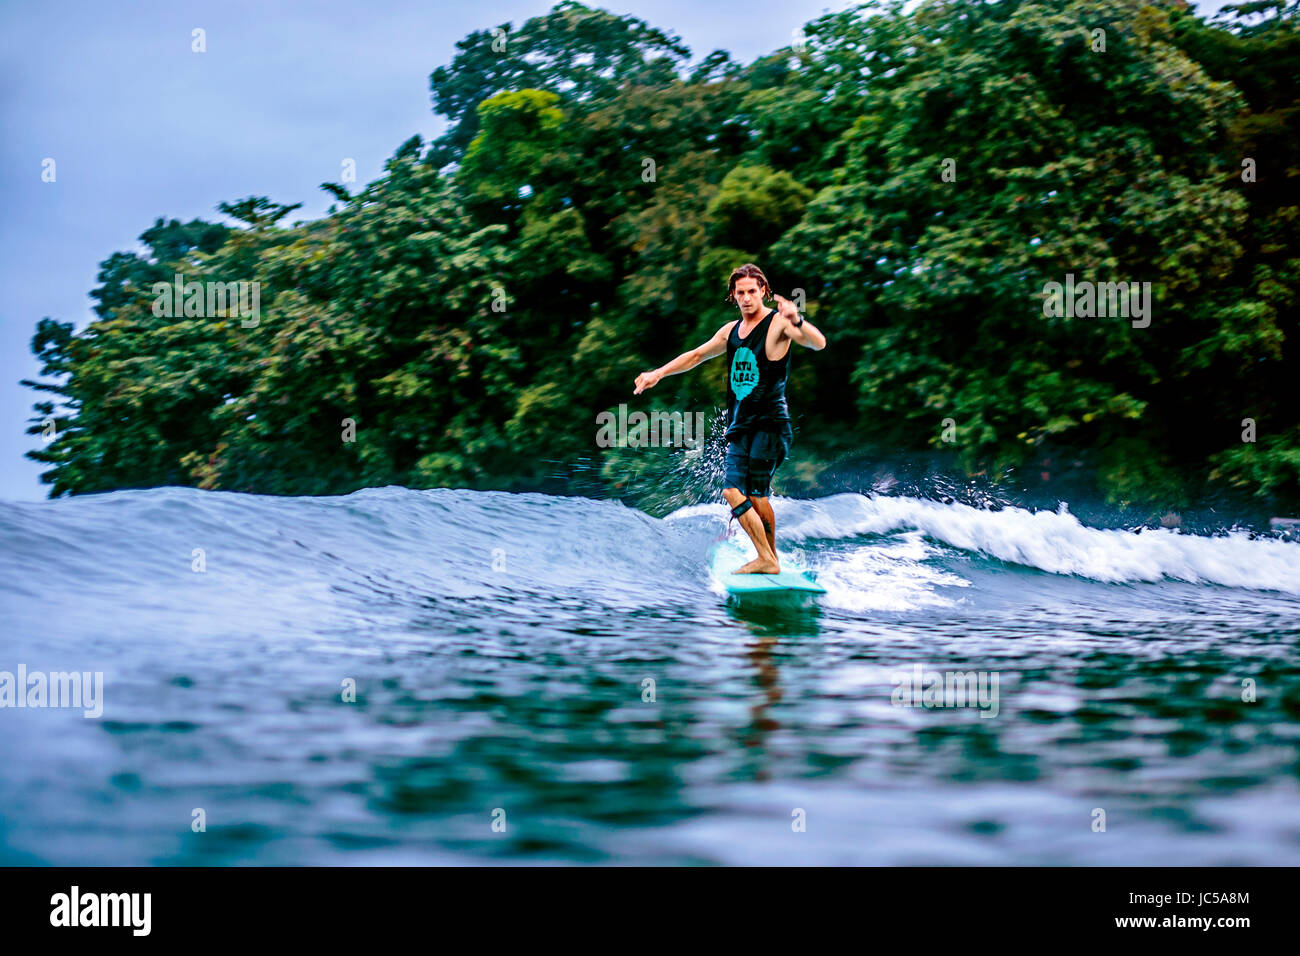 Surfista masculino en onda contra árboles verdes Foto de stock